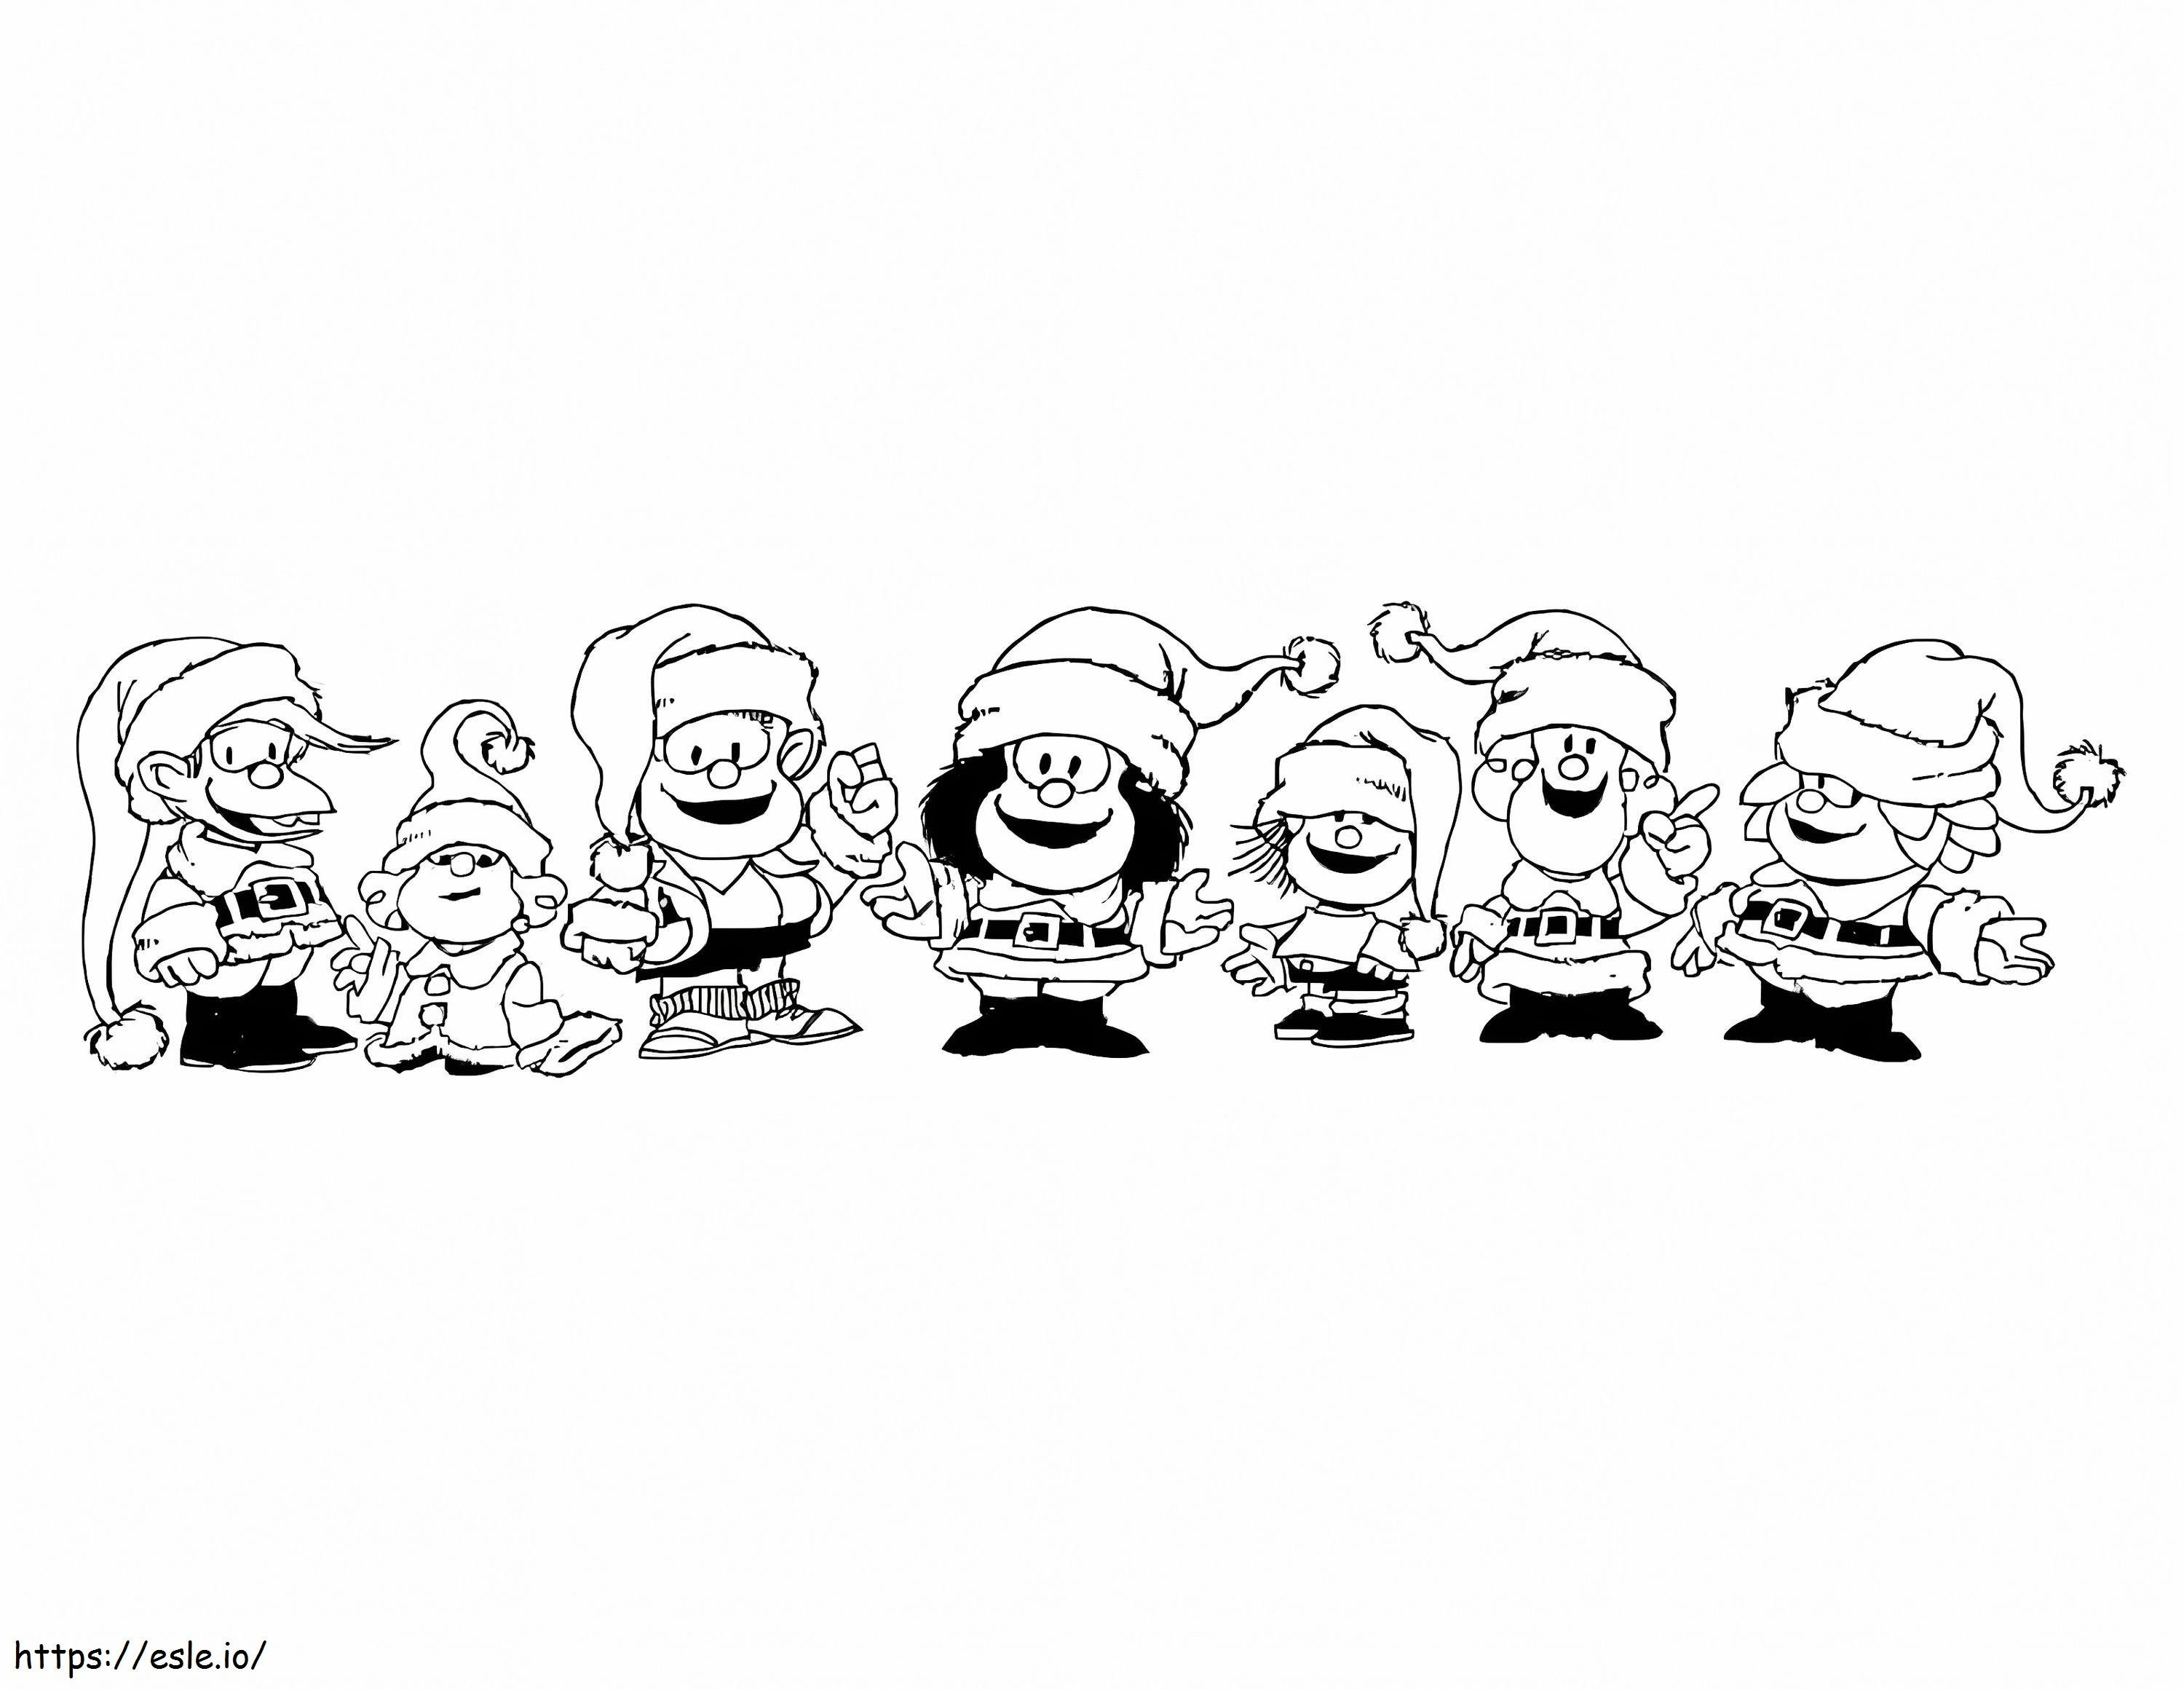 Weihnachts-Mafalda ausmalbilder